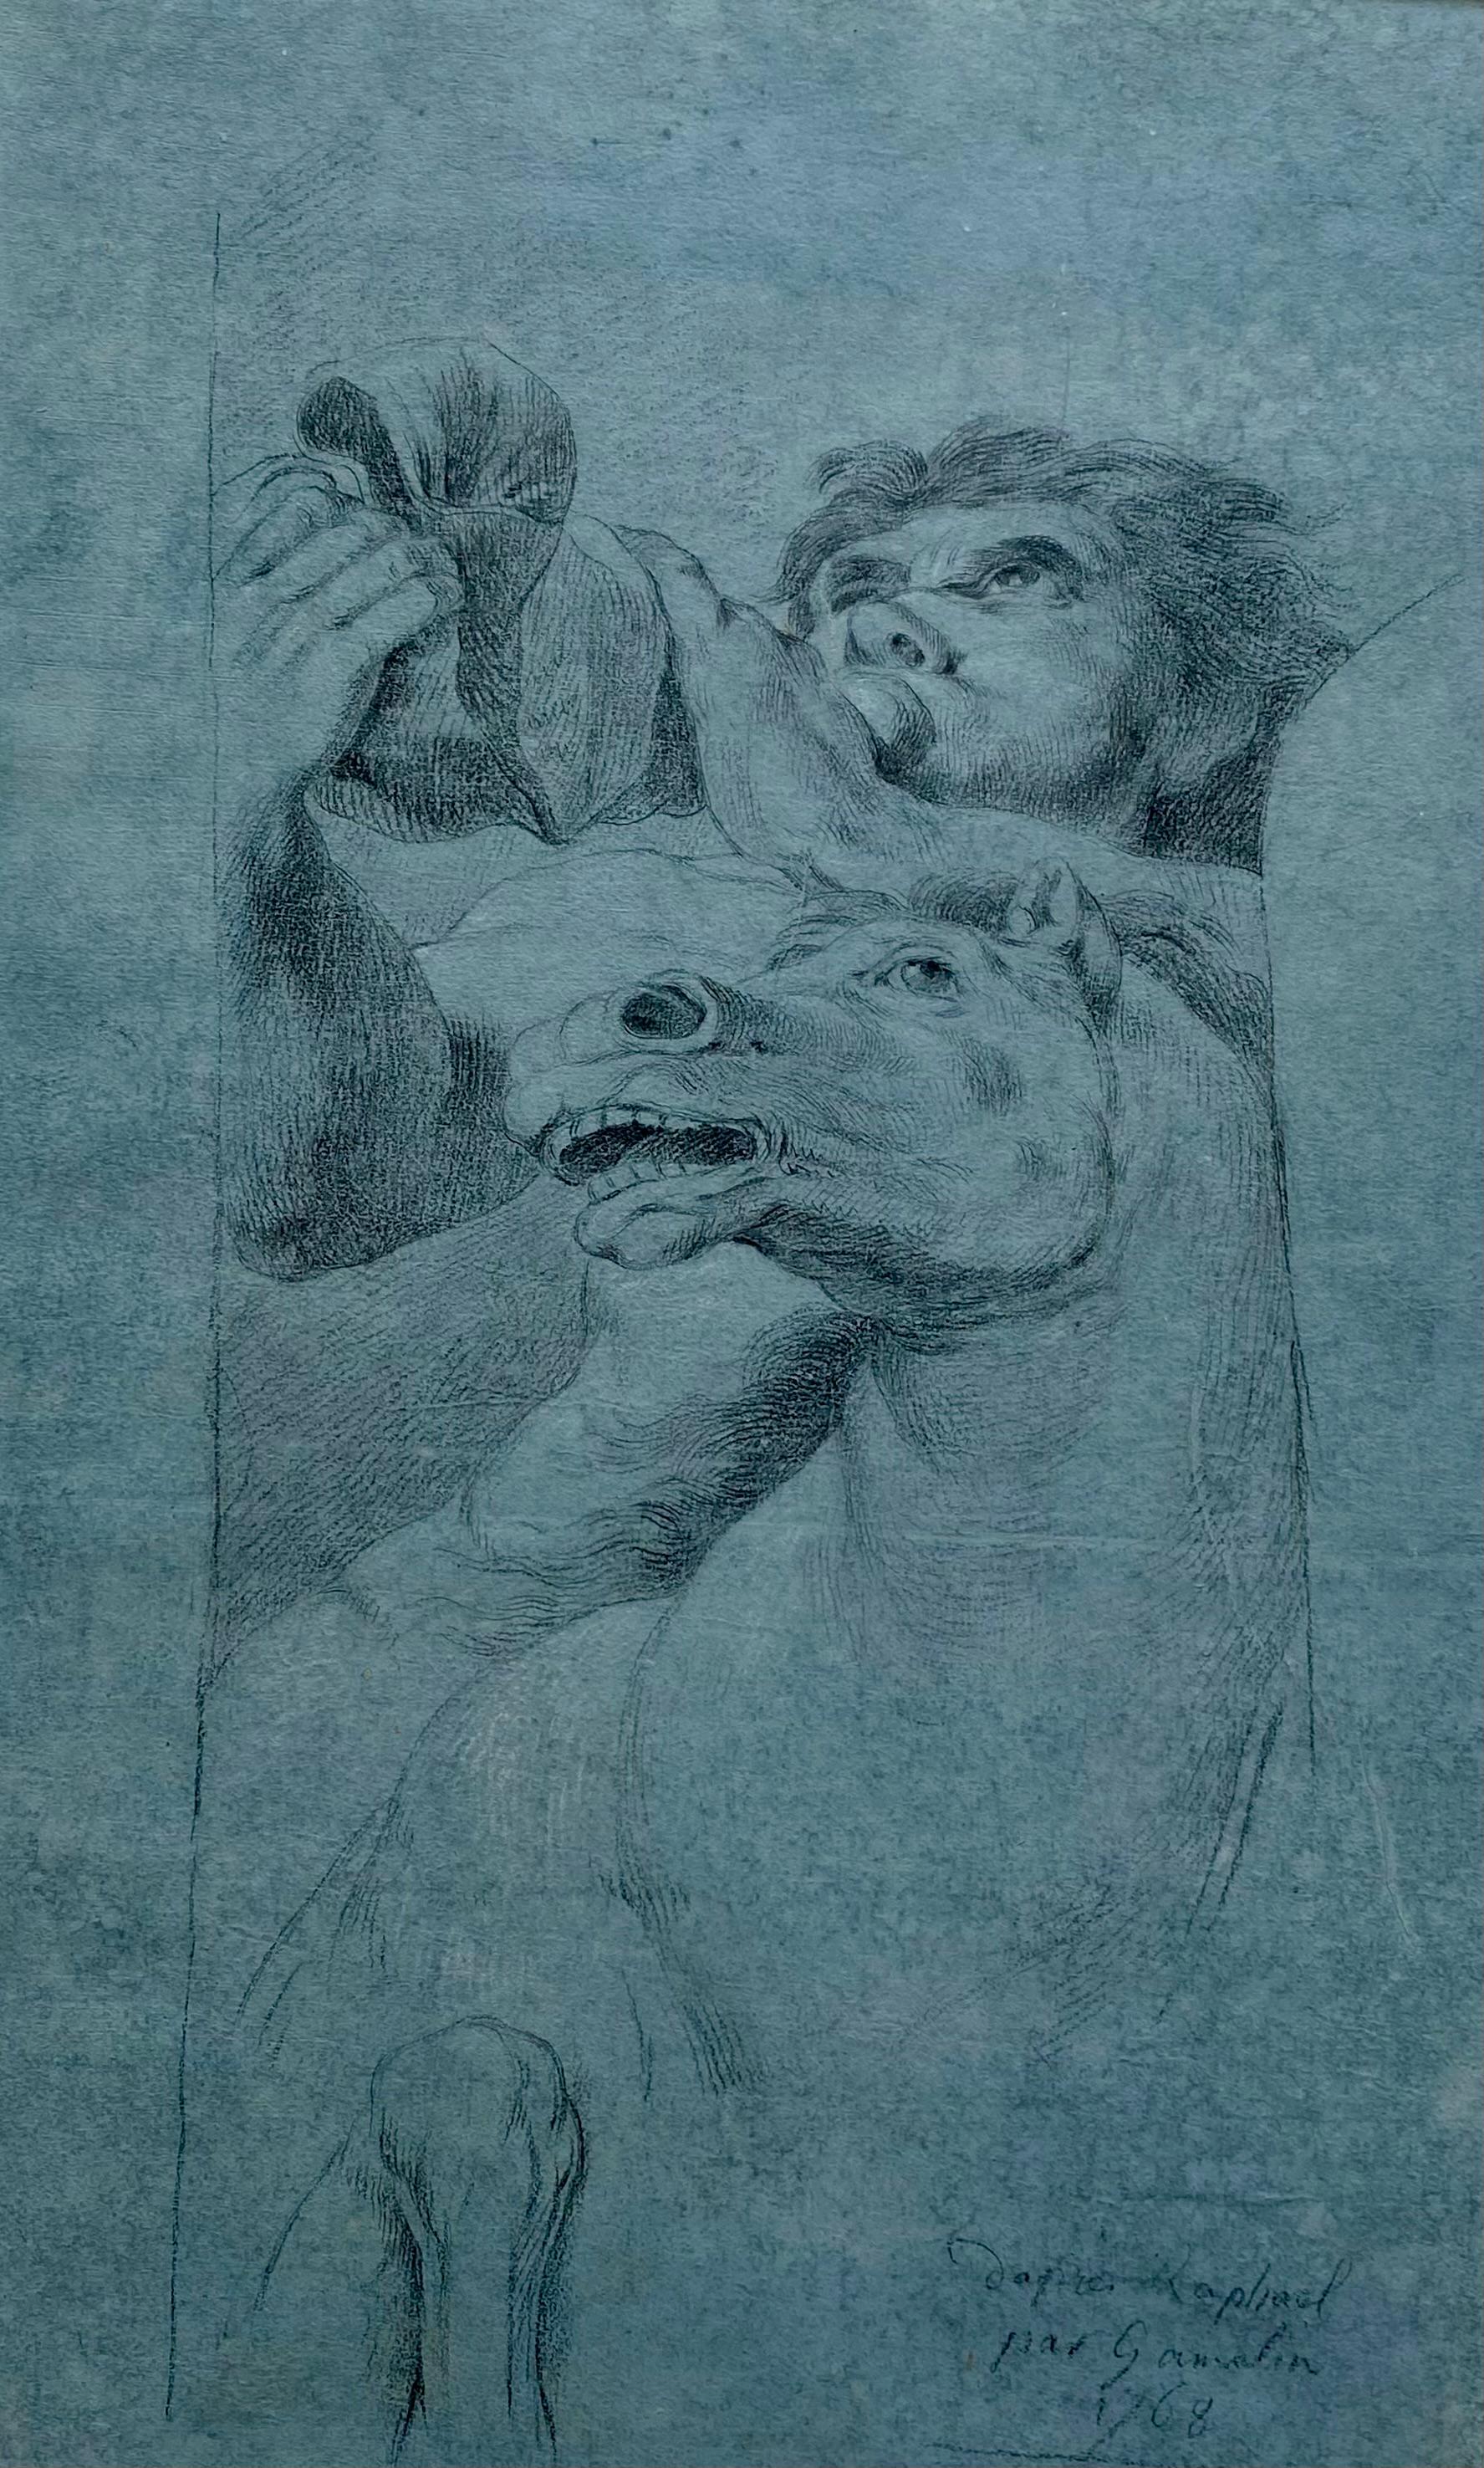 Jacques GAMELIN
Carcassone 1738-1803

Studie nach dem Triton des Triumphs der Galatea von Raphaël
1768
Schwarzer Stein und helle weiße Kreide auf blauem Papier
Signiert und datiert unten rechts
41 x 27 cm